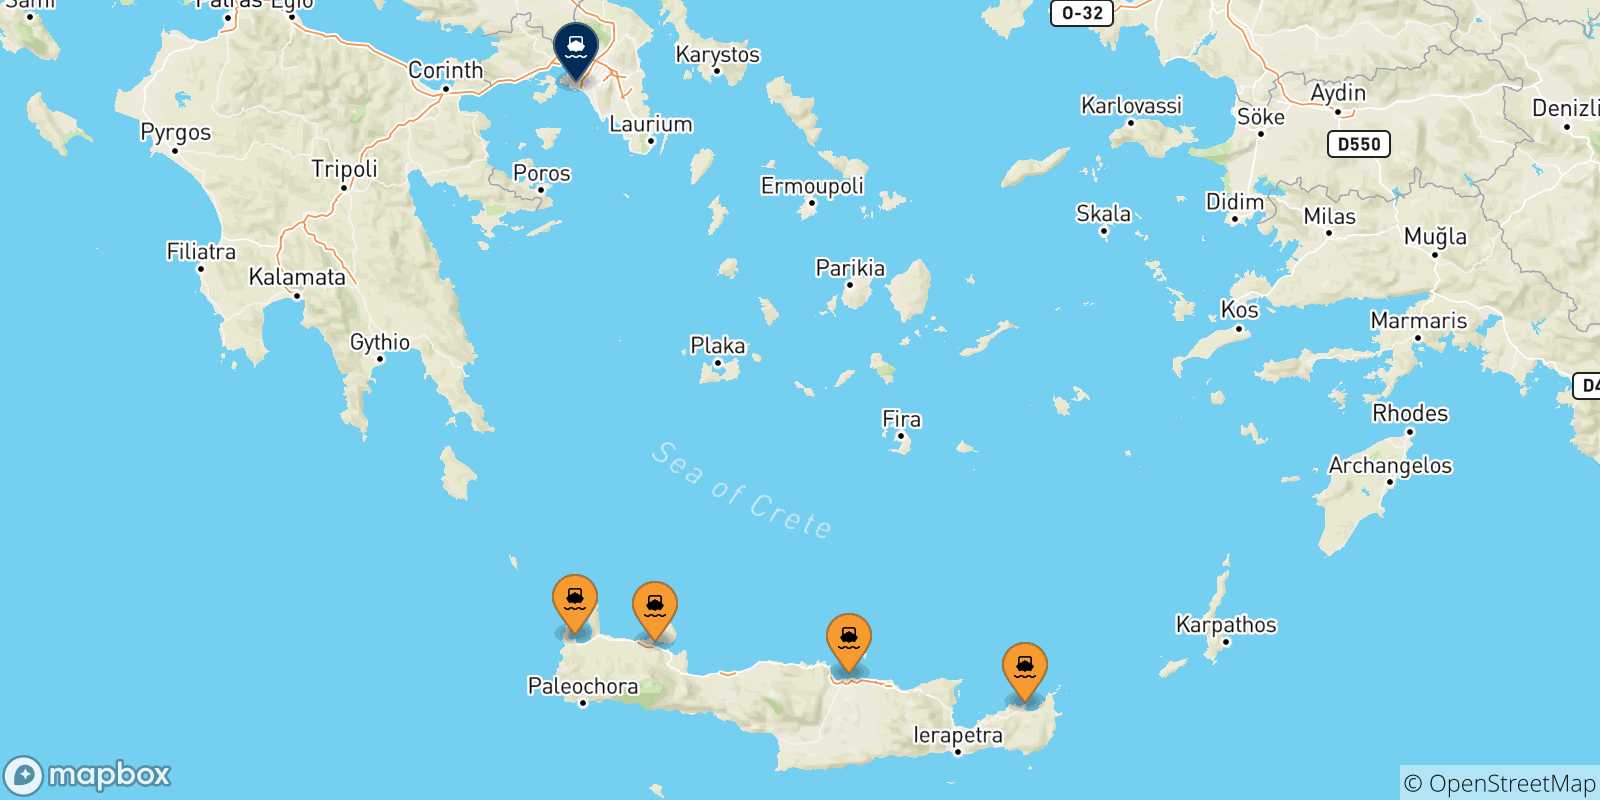 Mappa delle possibili rotte tra Creta e Pireo